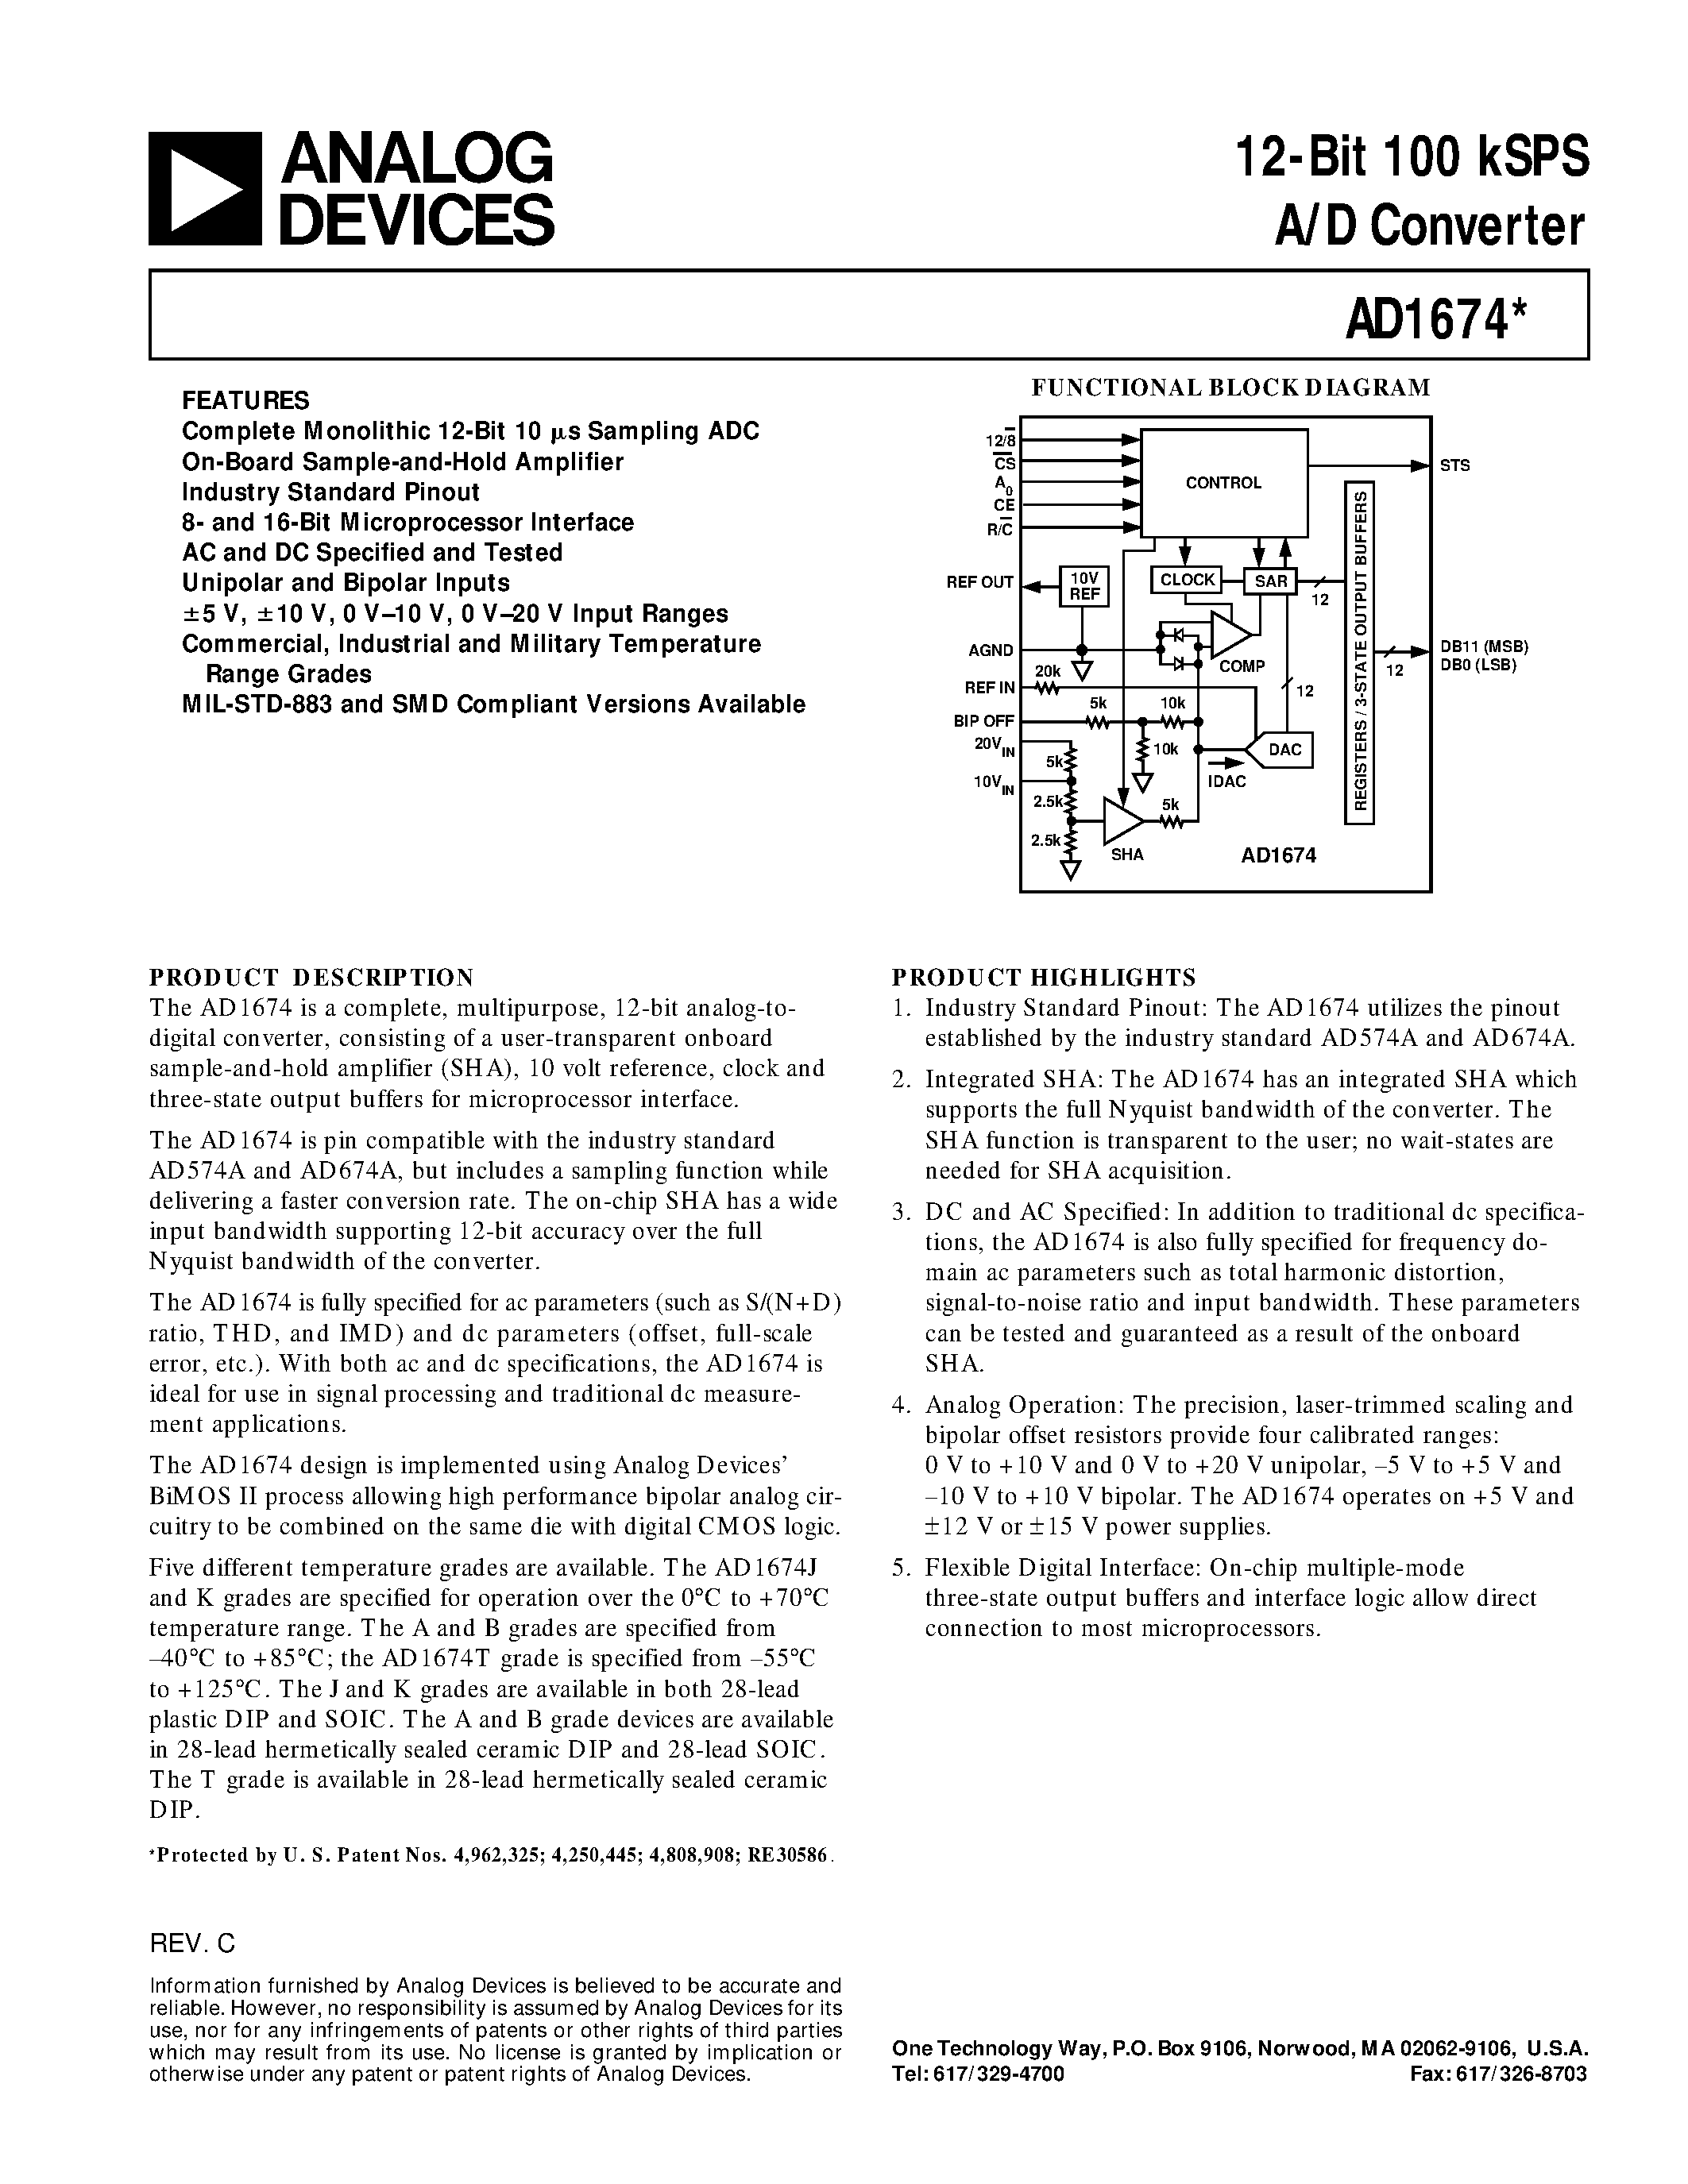 Datasheet AD1674AR - 12-Bit 100 kSPS A/D Converter page 1